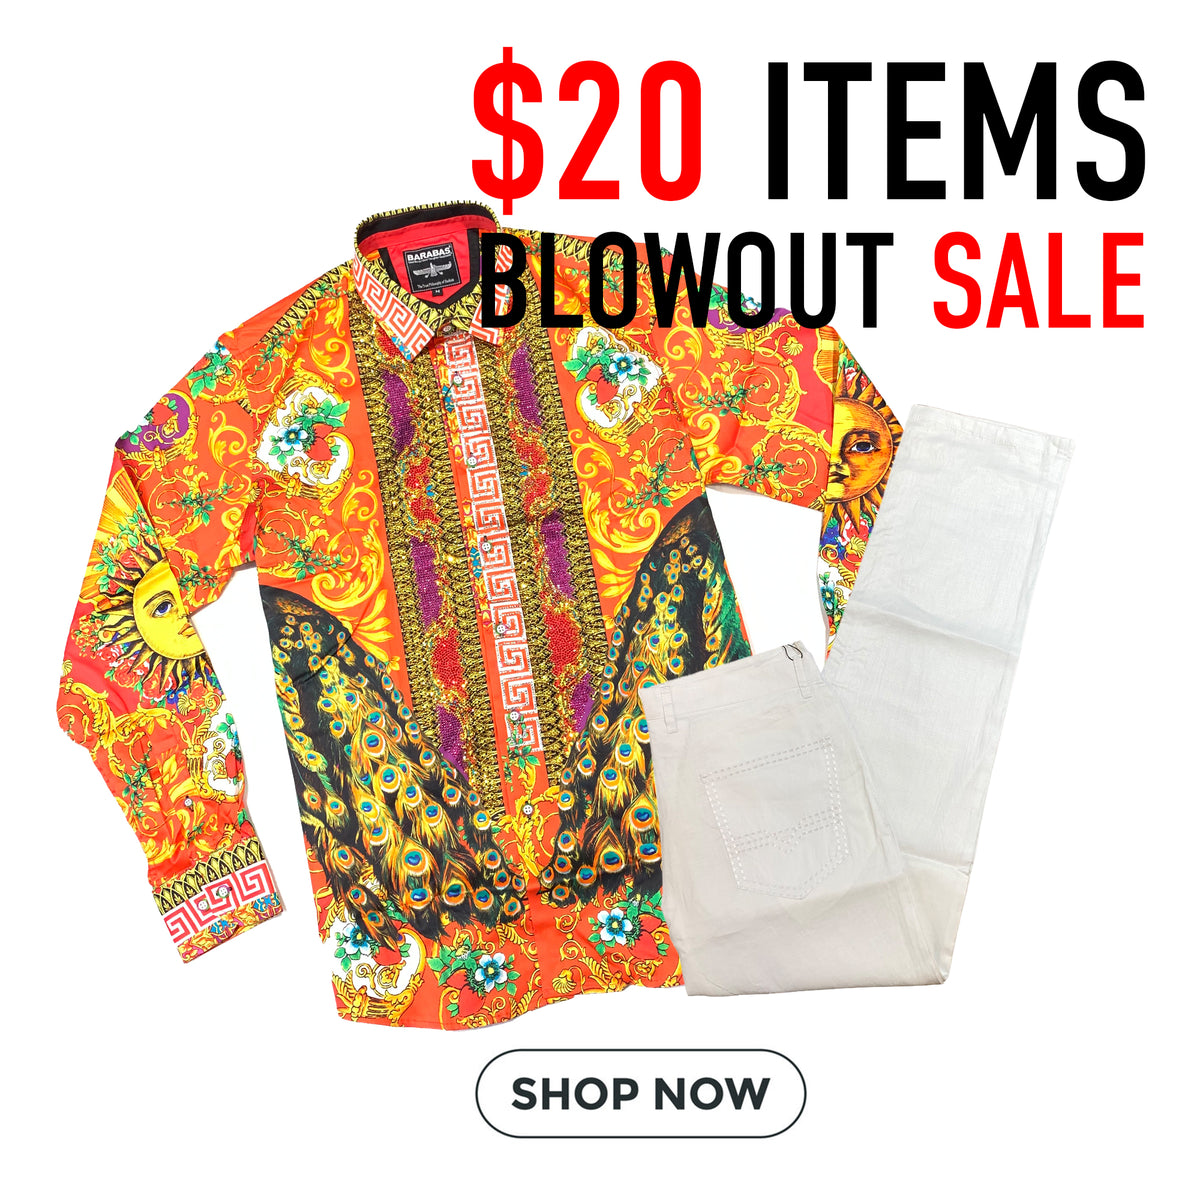 $20 Items Blowout Sale